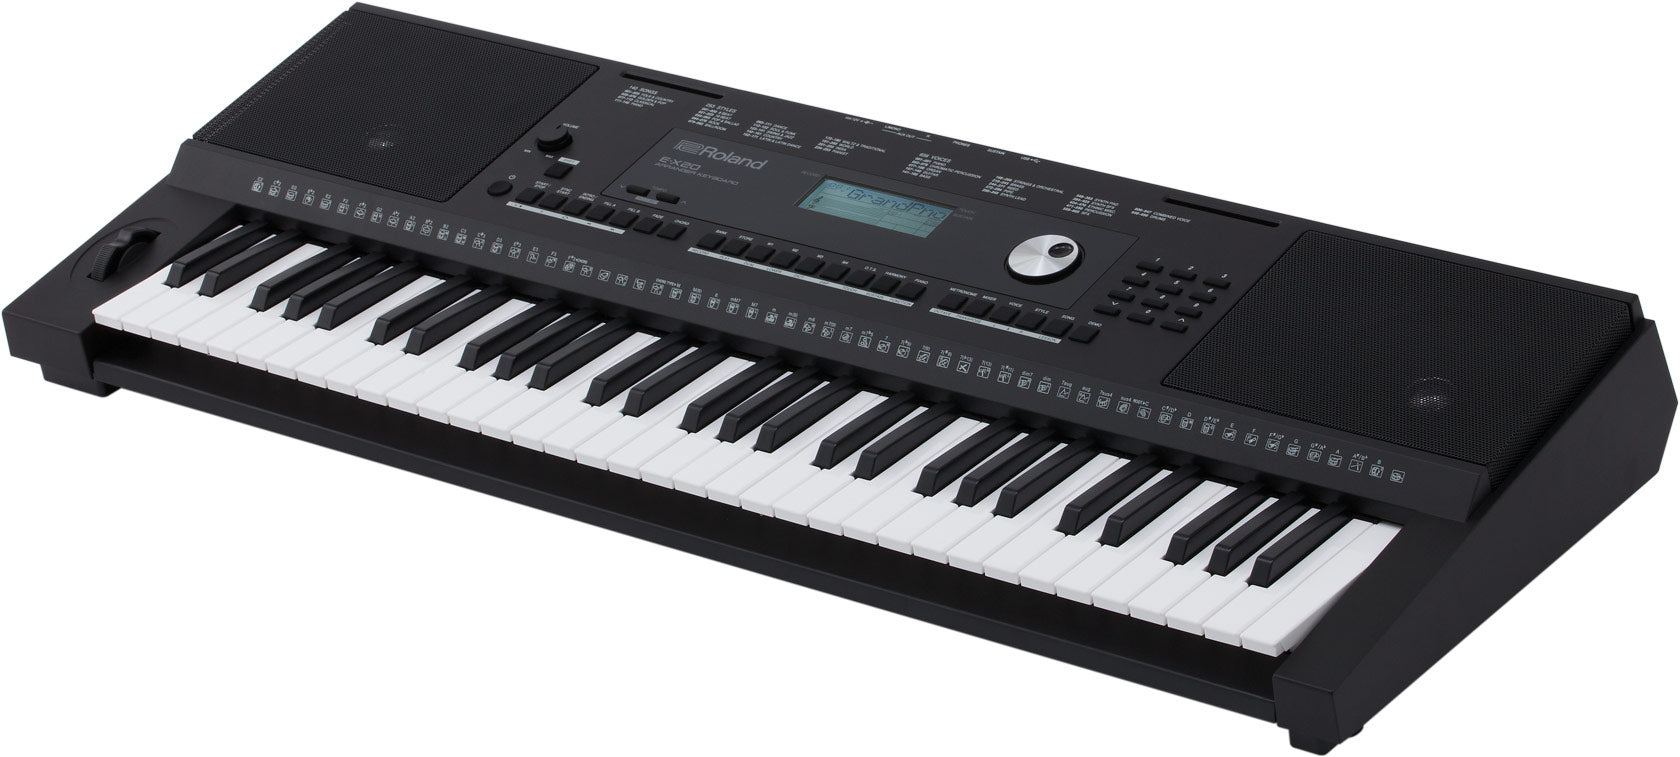 Roland E-X20 編曲鍵盤